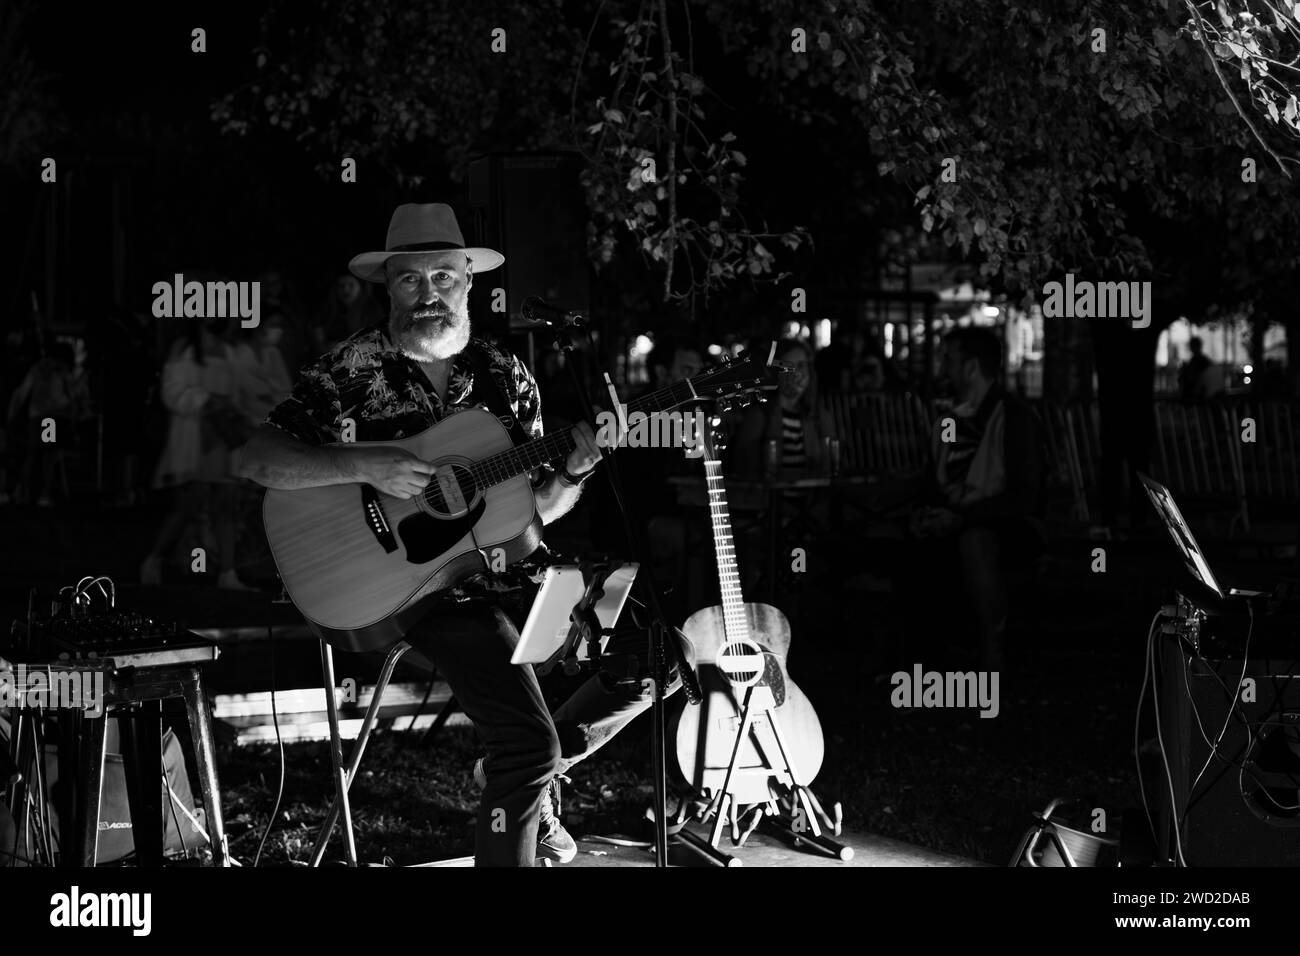 El Guitarrista y cantante sentado y con sombrero canta en un concierto celebrado en Nigran durante la fiesta de la cerveza artesana Stockfoto